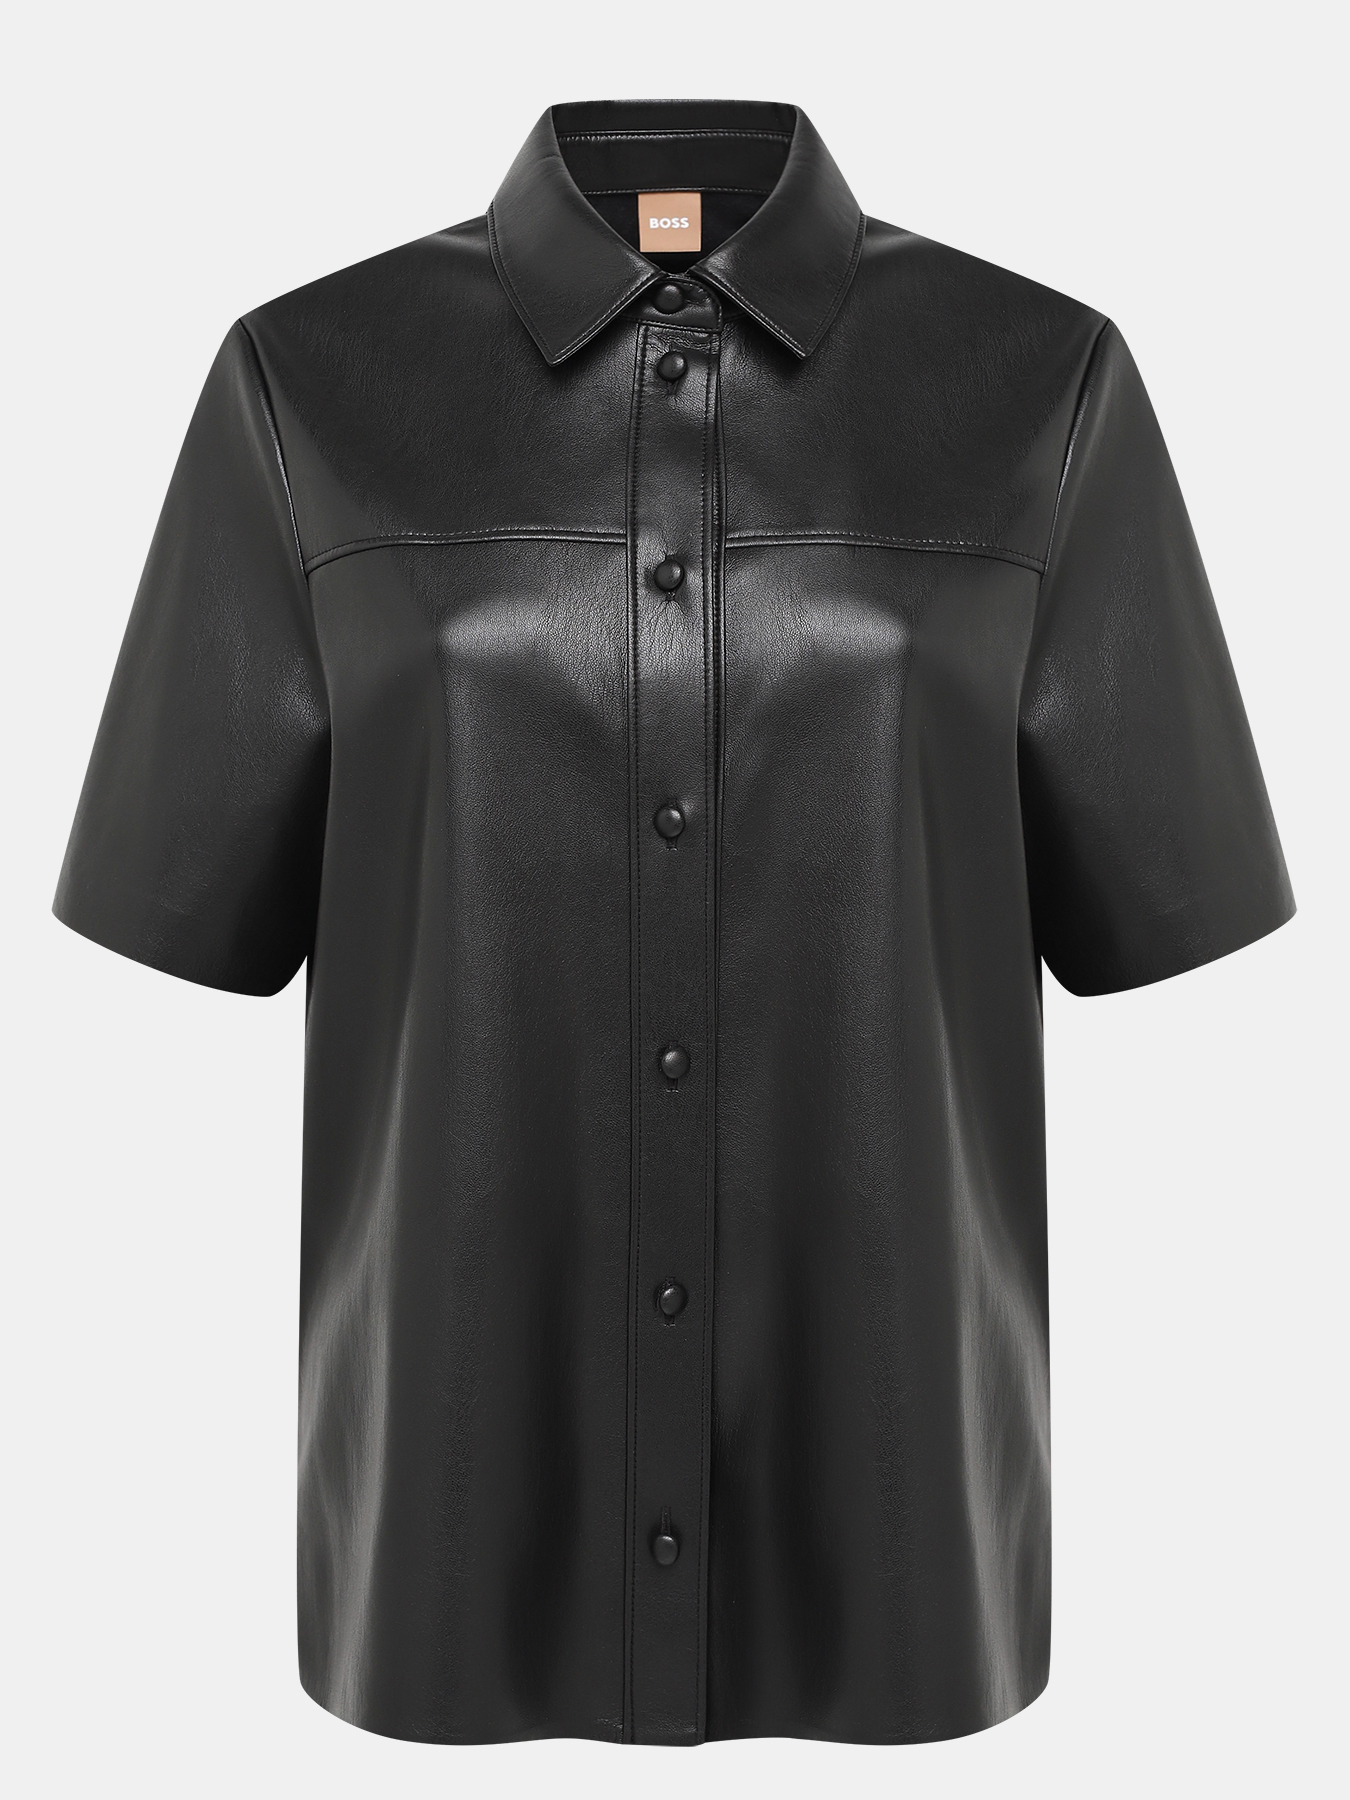 Рубашка Bolisa BOSS 421249-016, цвет черный, размер 40